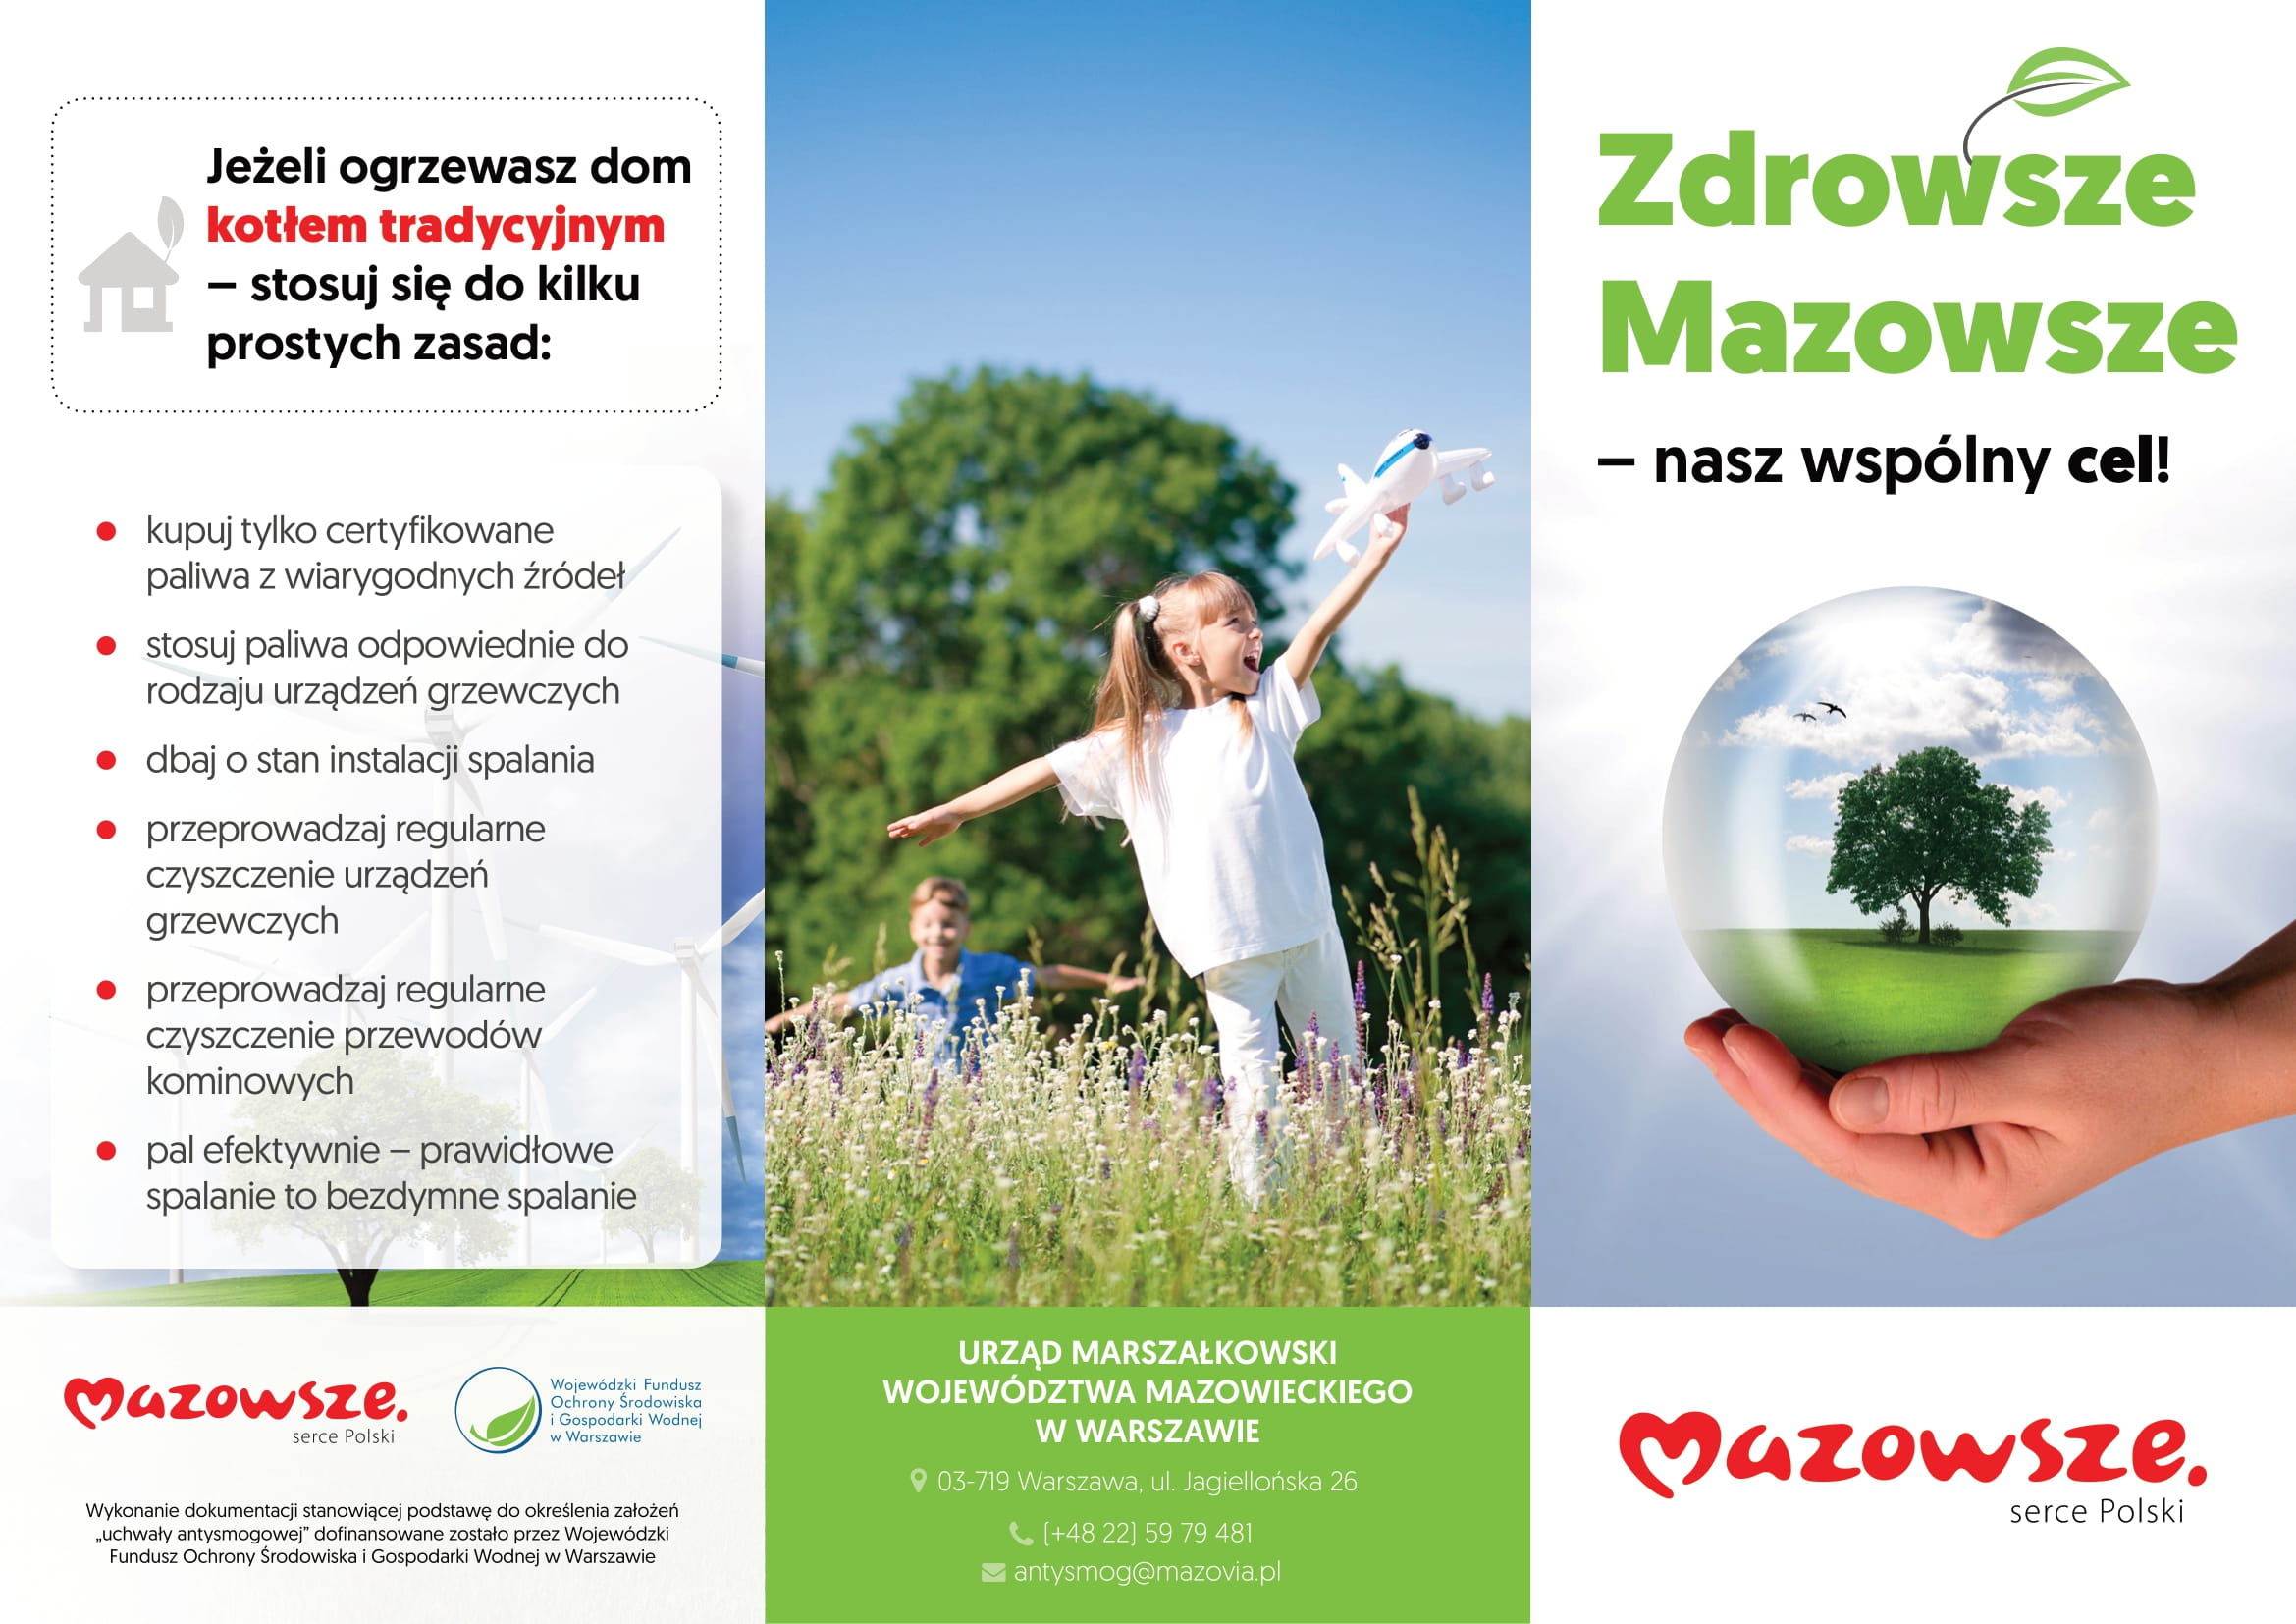 Zdrowe Mazowsze